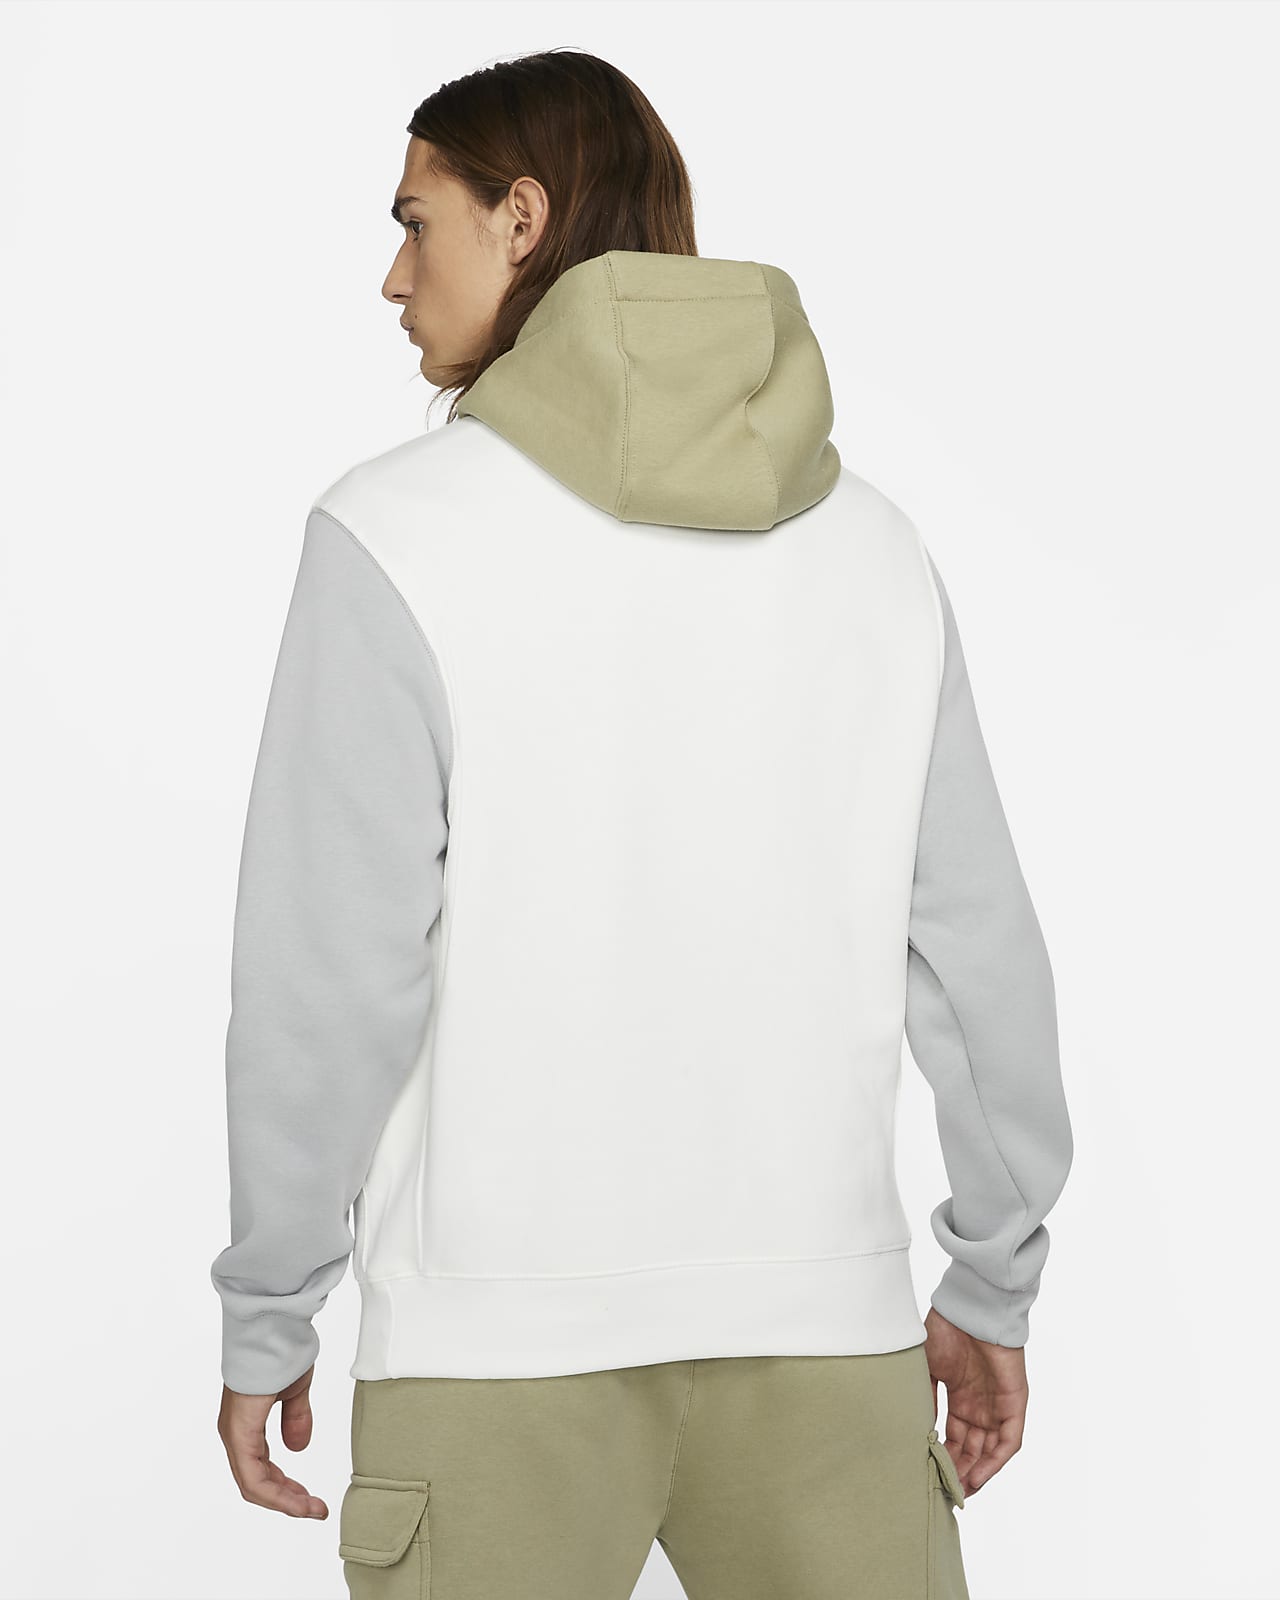 women's swoosh pullover hoodie nike sportswear